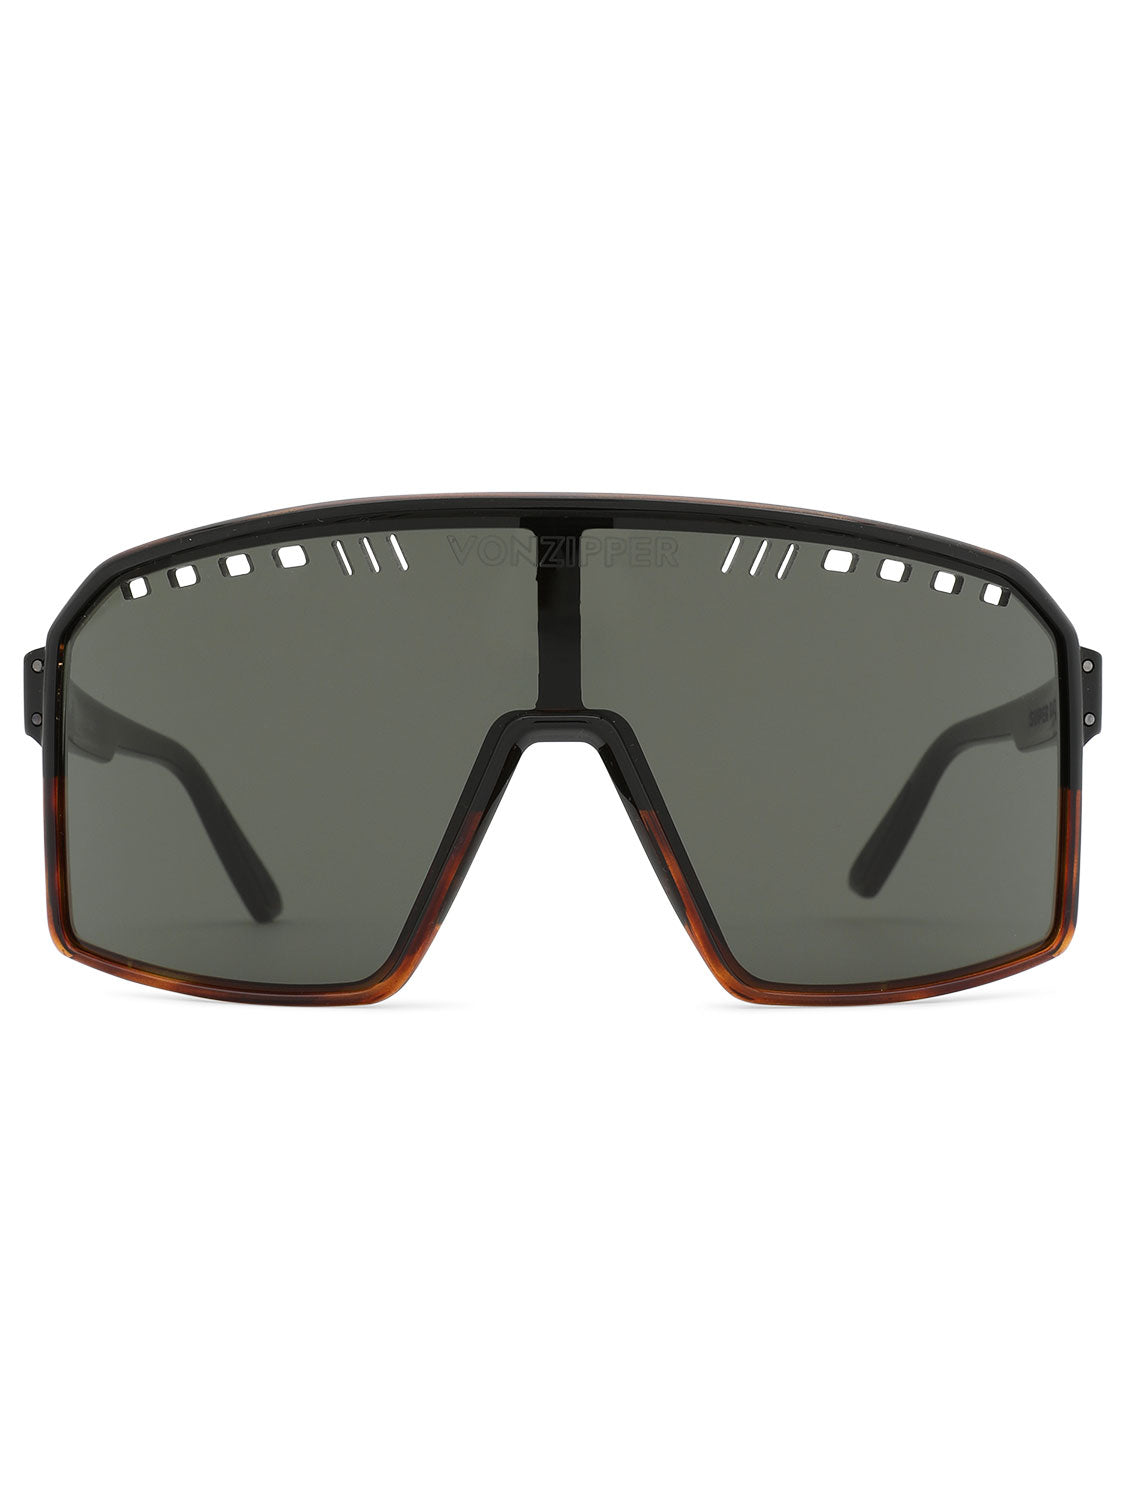 VinZipper Unisex Super Rad Sunglasses